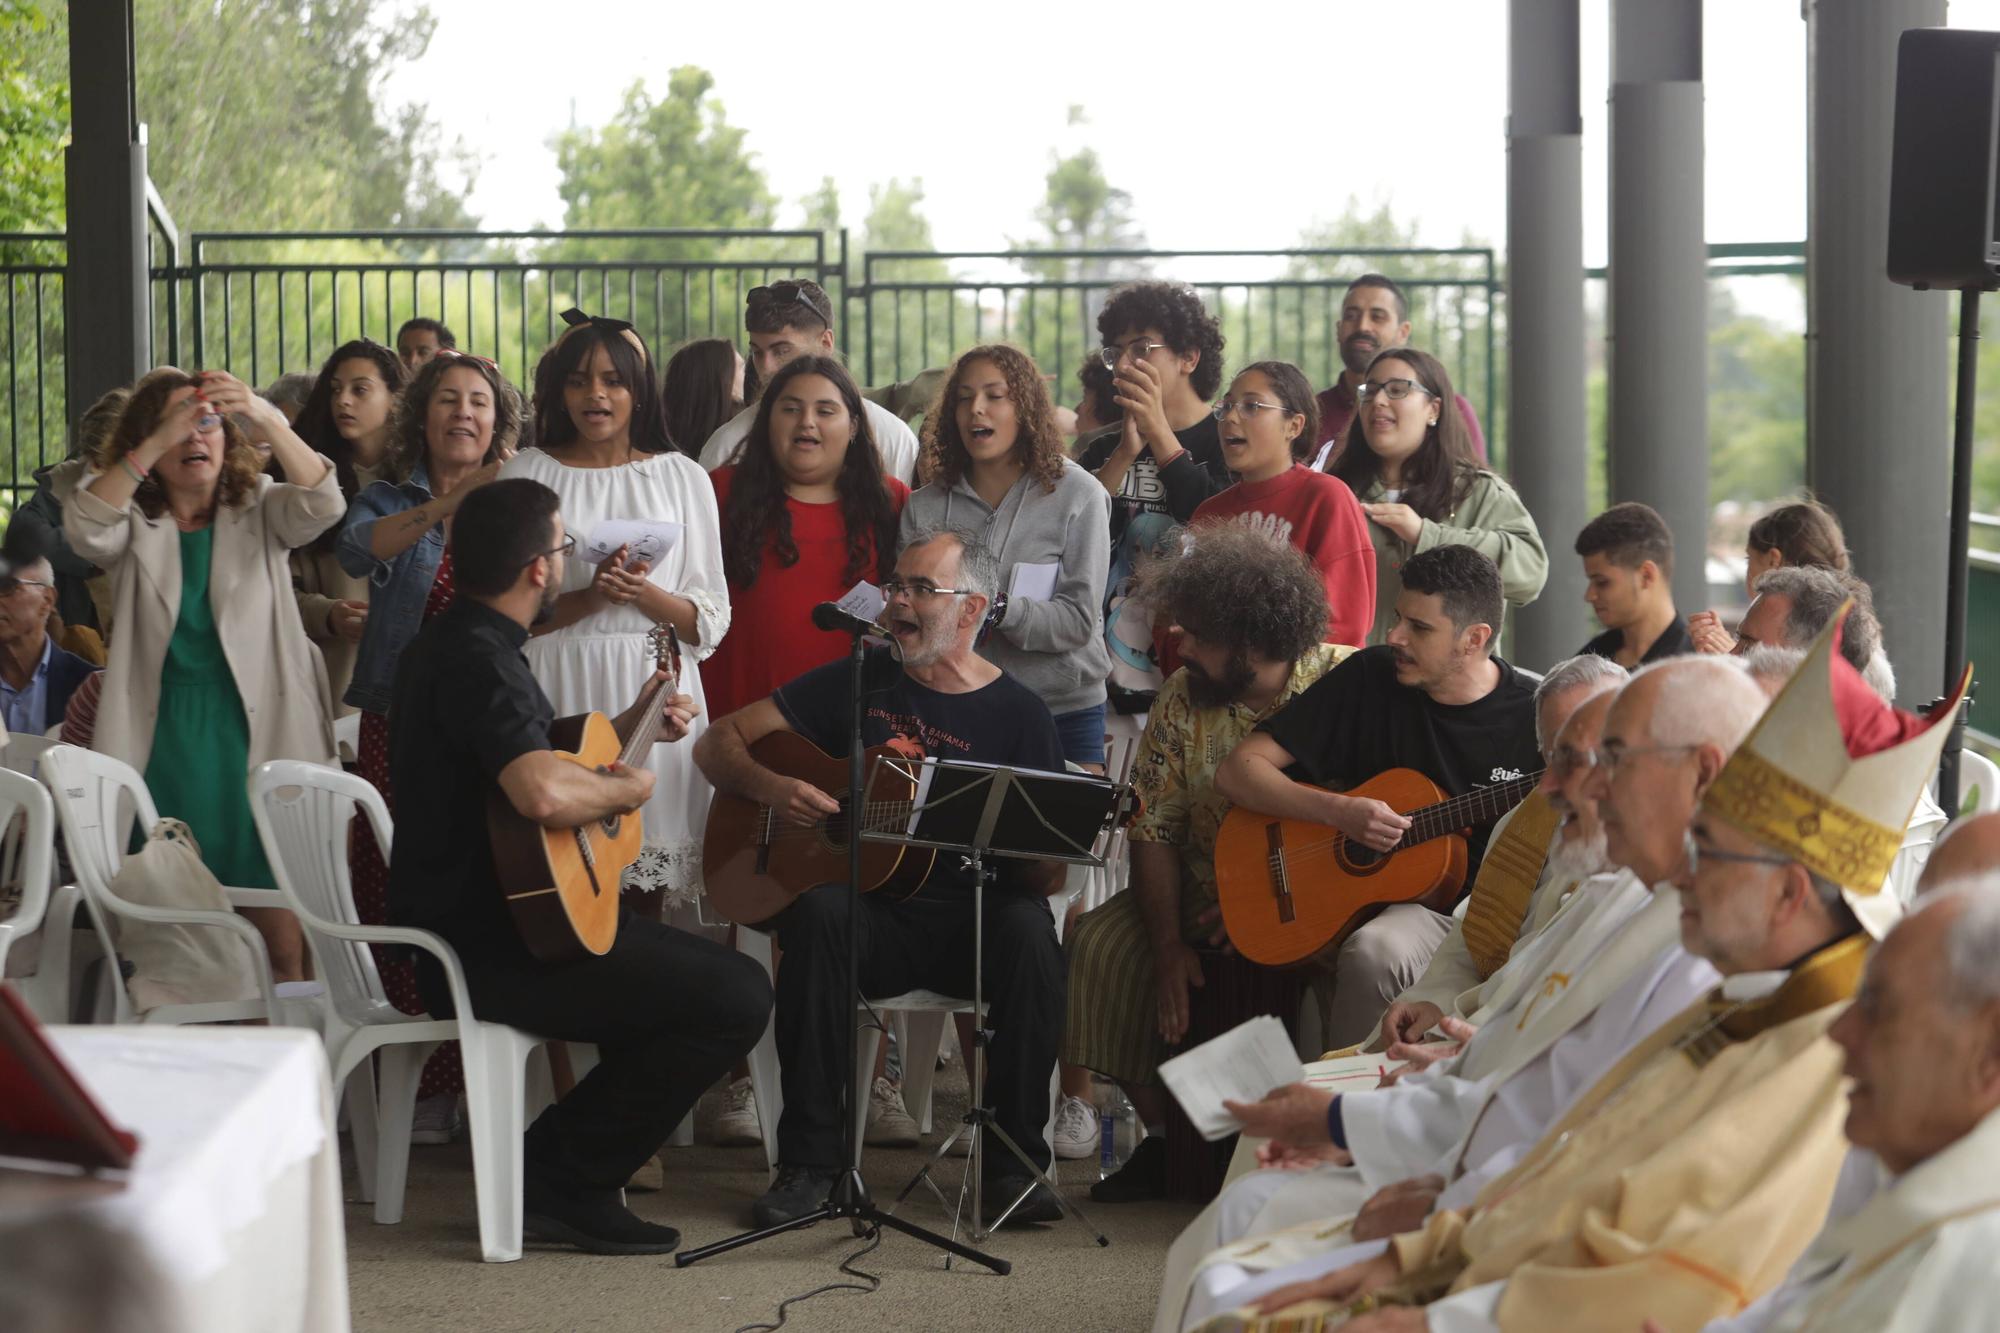 El encuentro de Cáritas en Gijón con motivo de la festividad del Corpus Christi, en imágenes